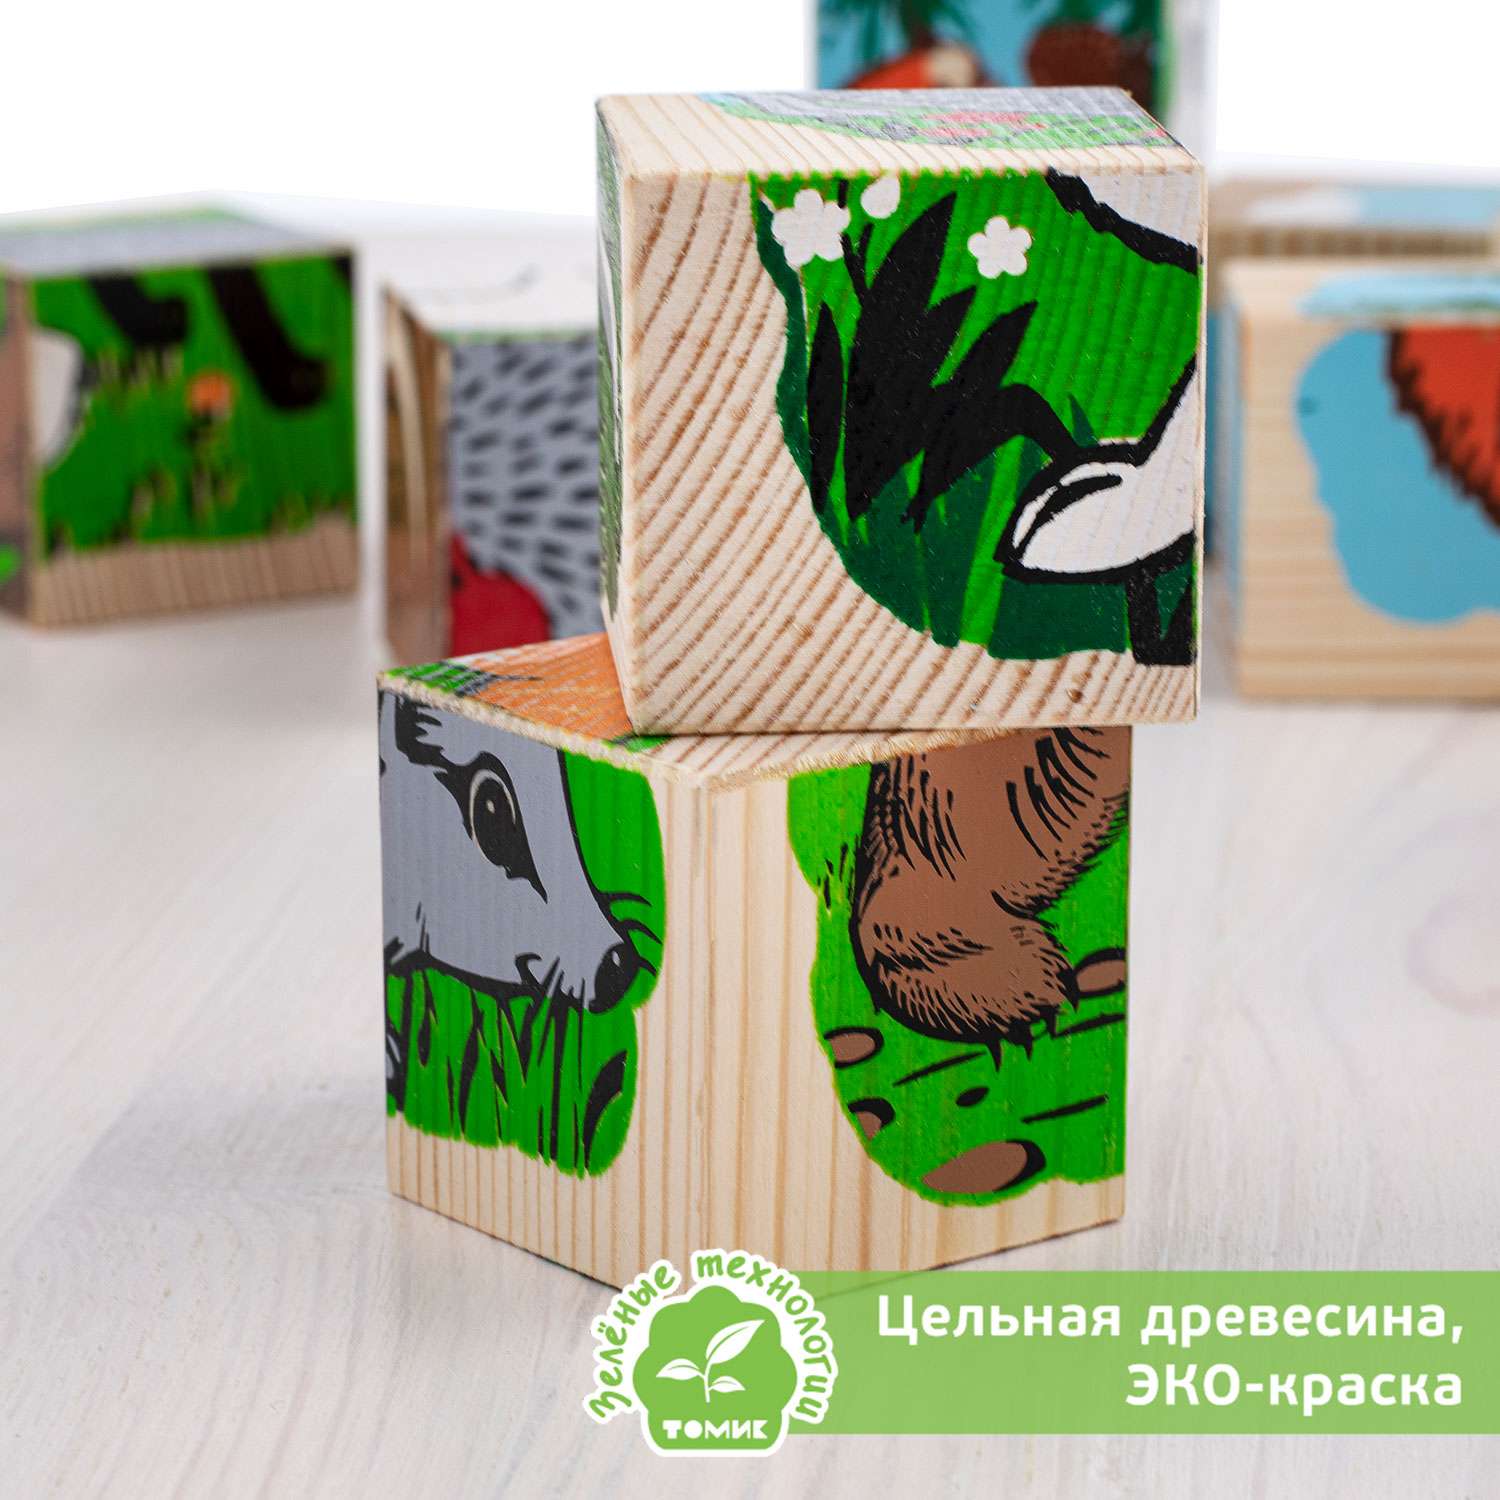 Кубики Томик Животные леса 9 штук 4444-4 - фото 4